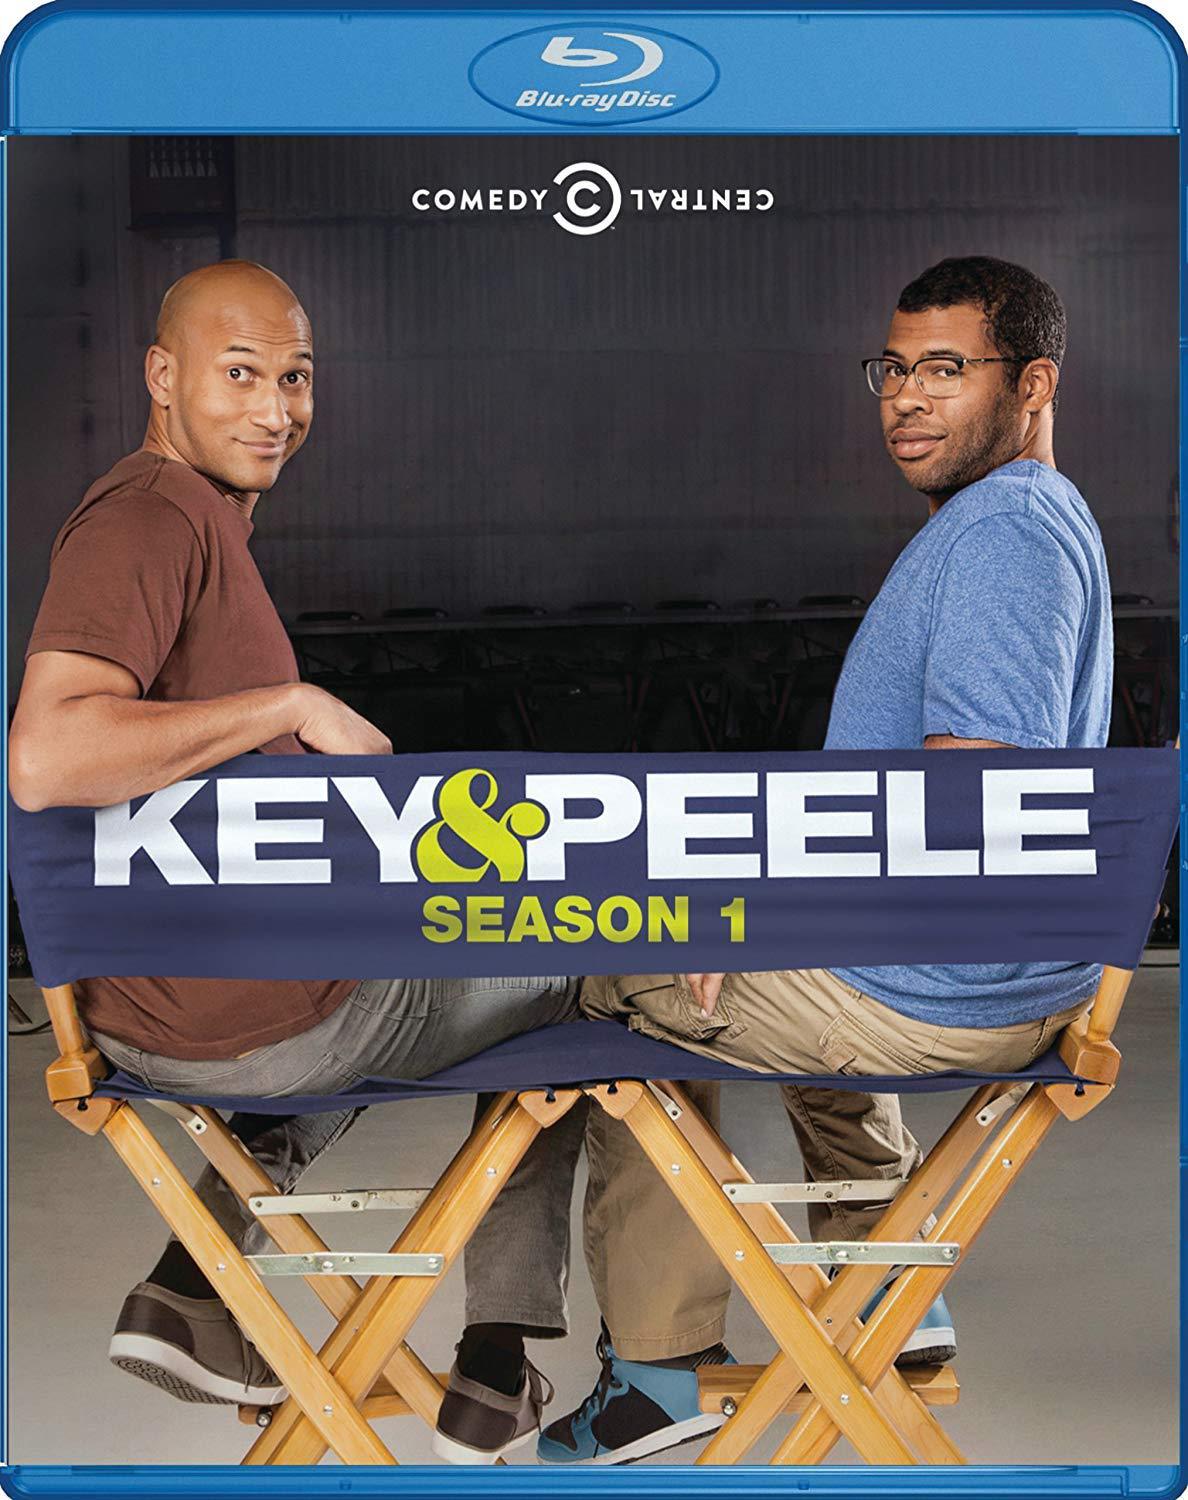 Key & Peele: Season 1